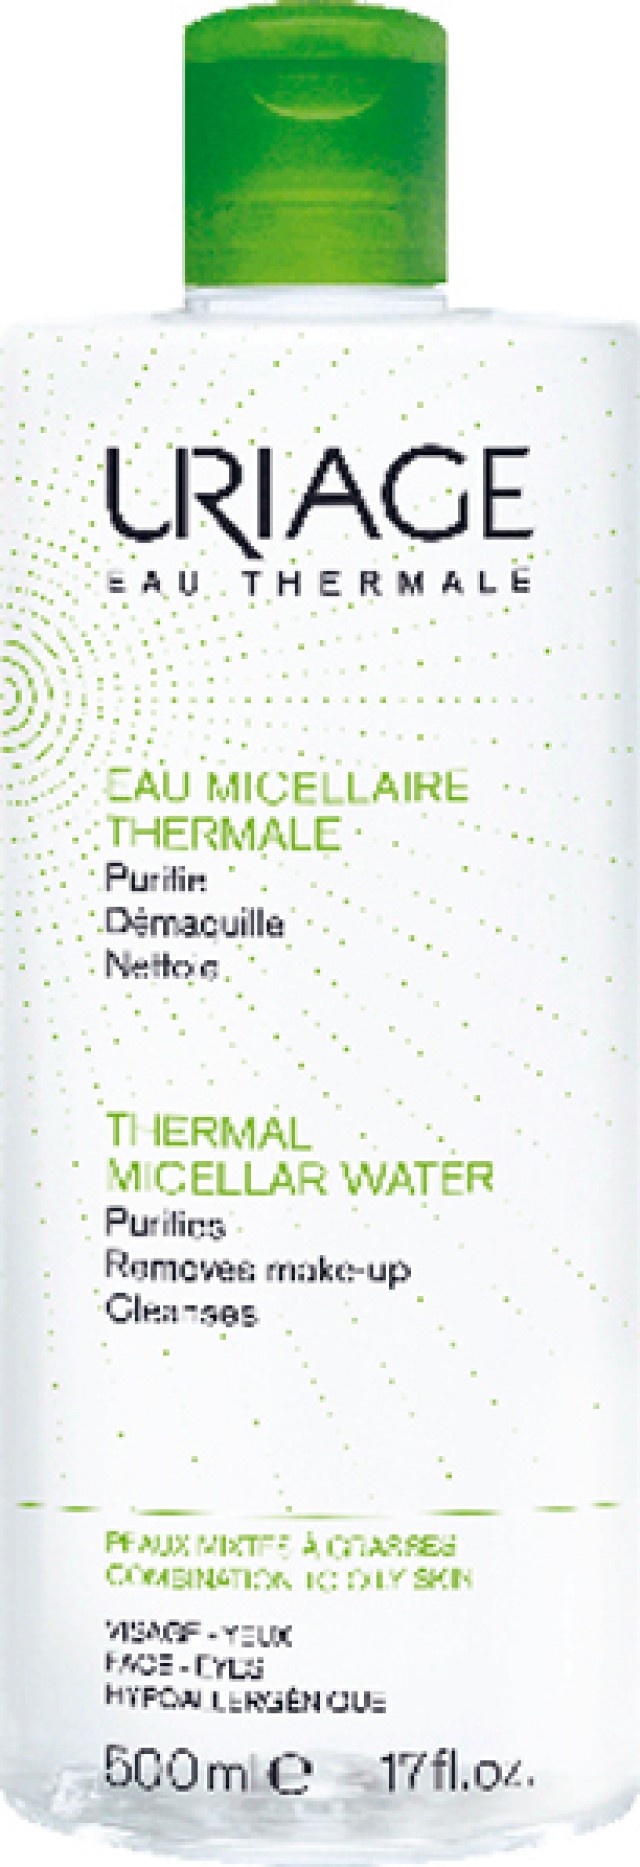 Uriage Thermal Micellar Water Ιαματικό Νερό Καθαρισμού Προσώπου & Ματιών Για Λιπαρή Επιδερμίδα 500ml -20%